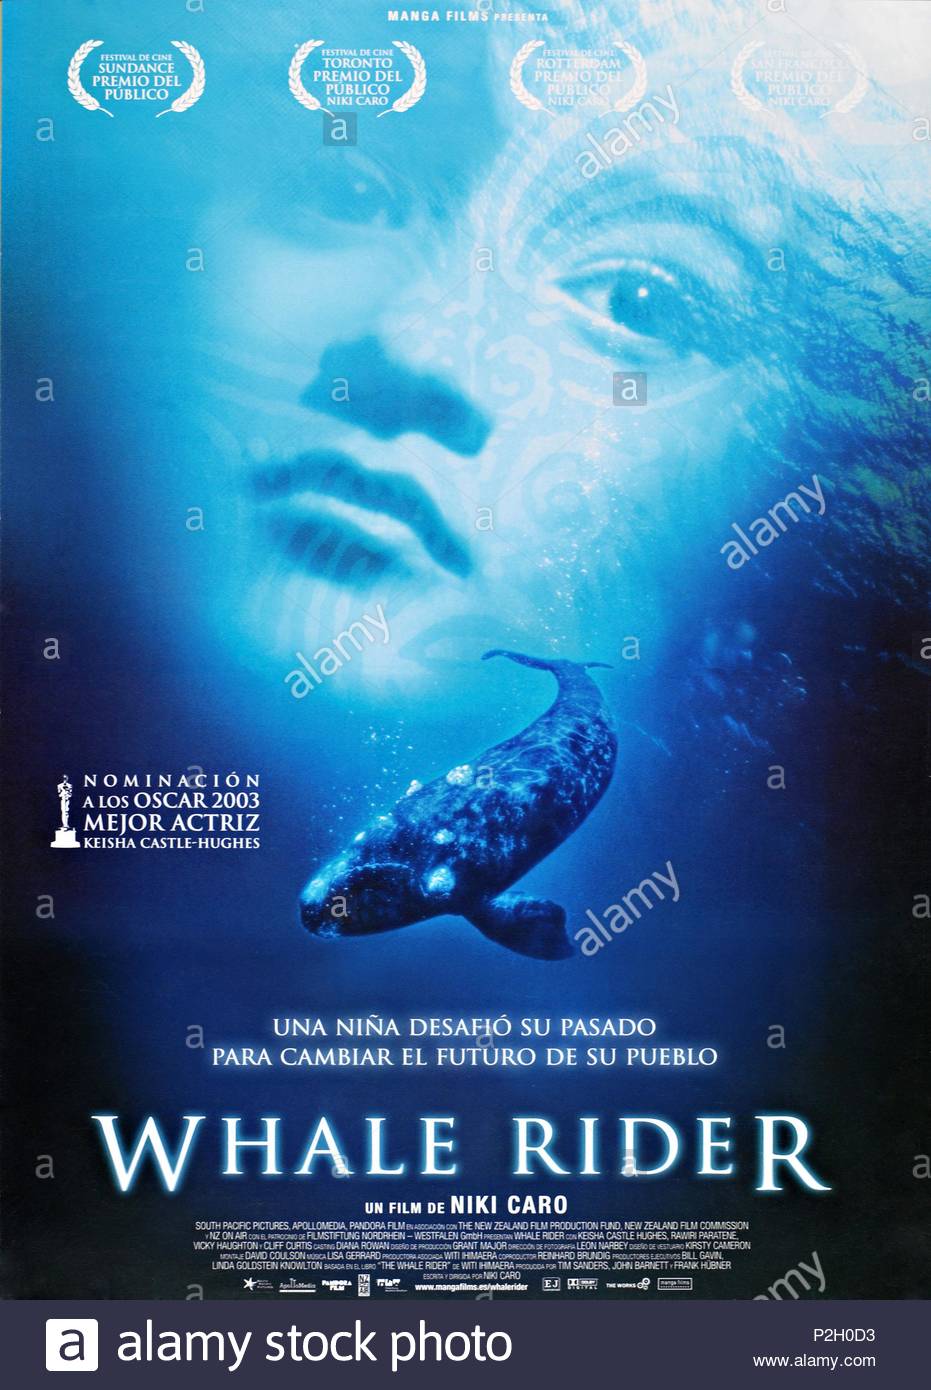 whale rider movie download